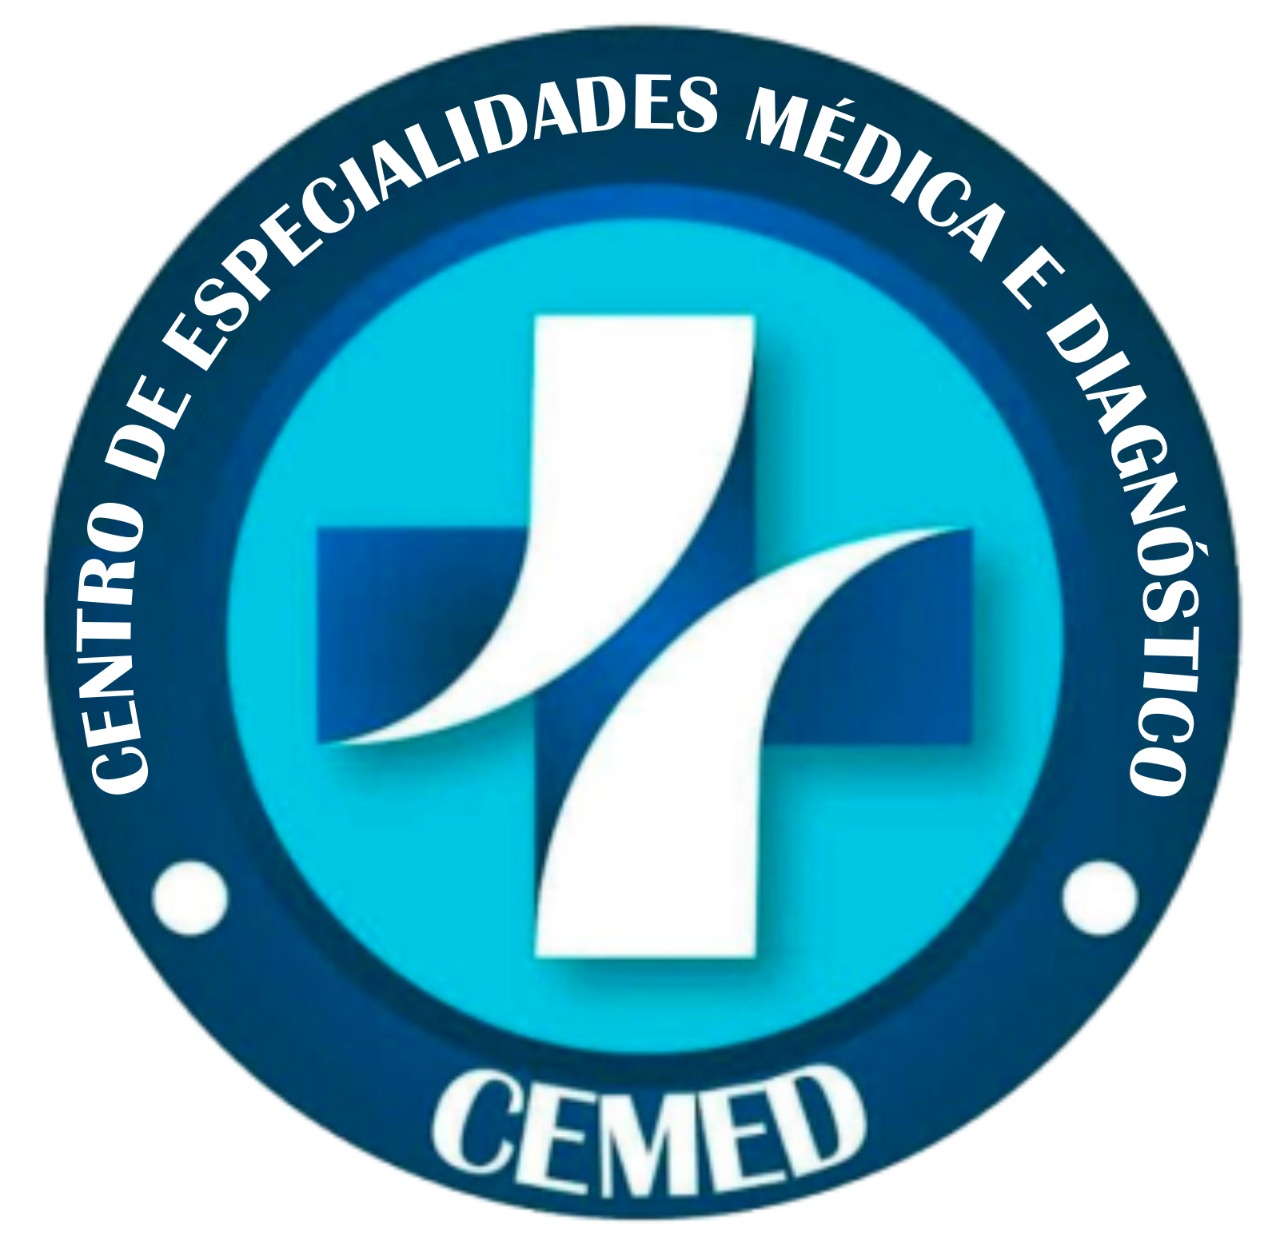 CEMED - Centro de Especialidades Médica e Diagnos